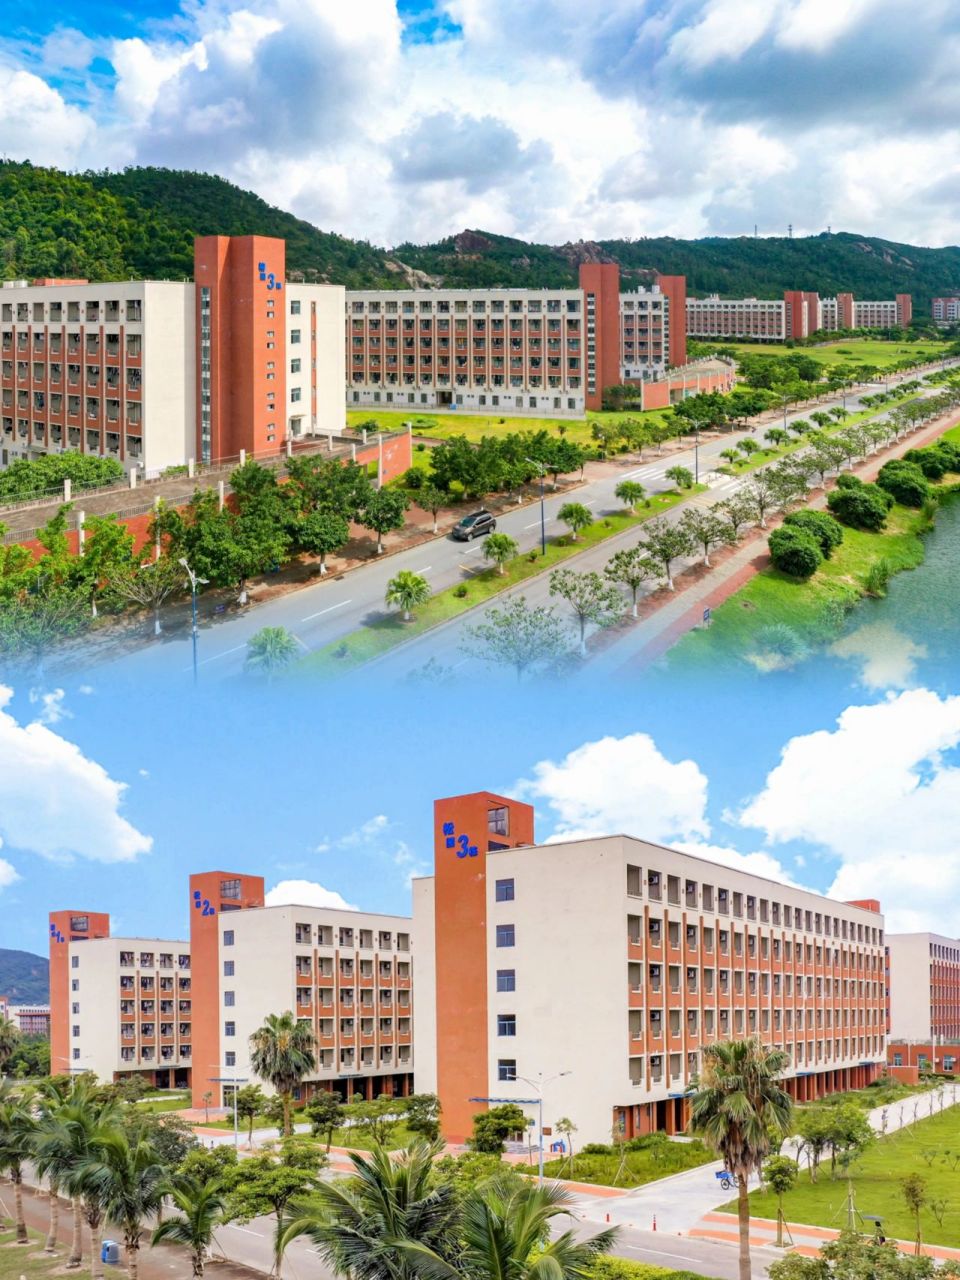 珠海科技学院宿舍楼图片